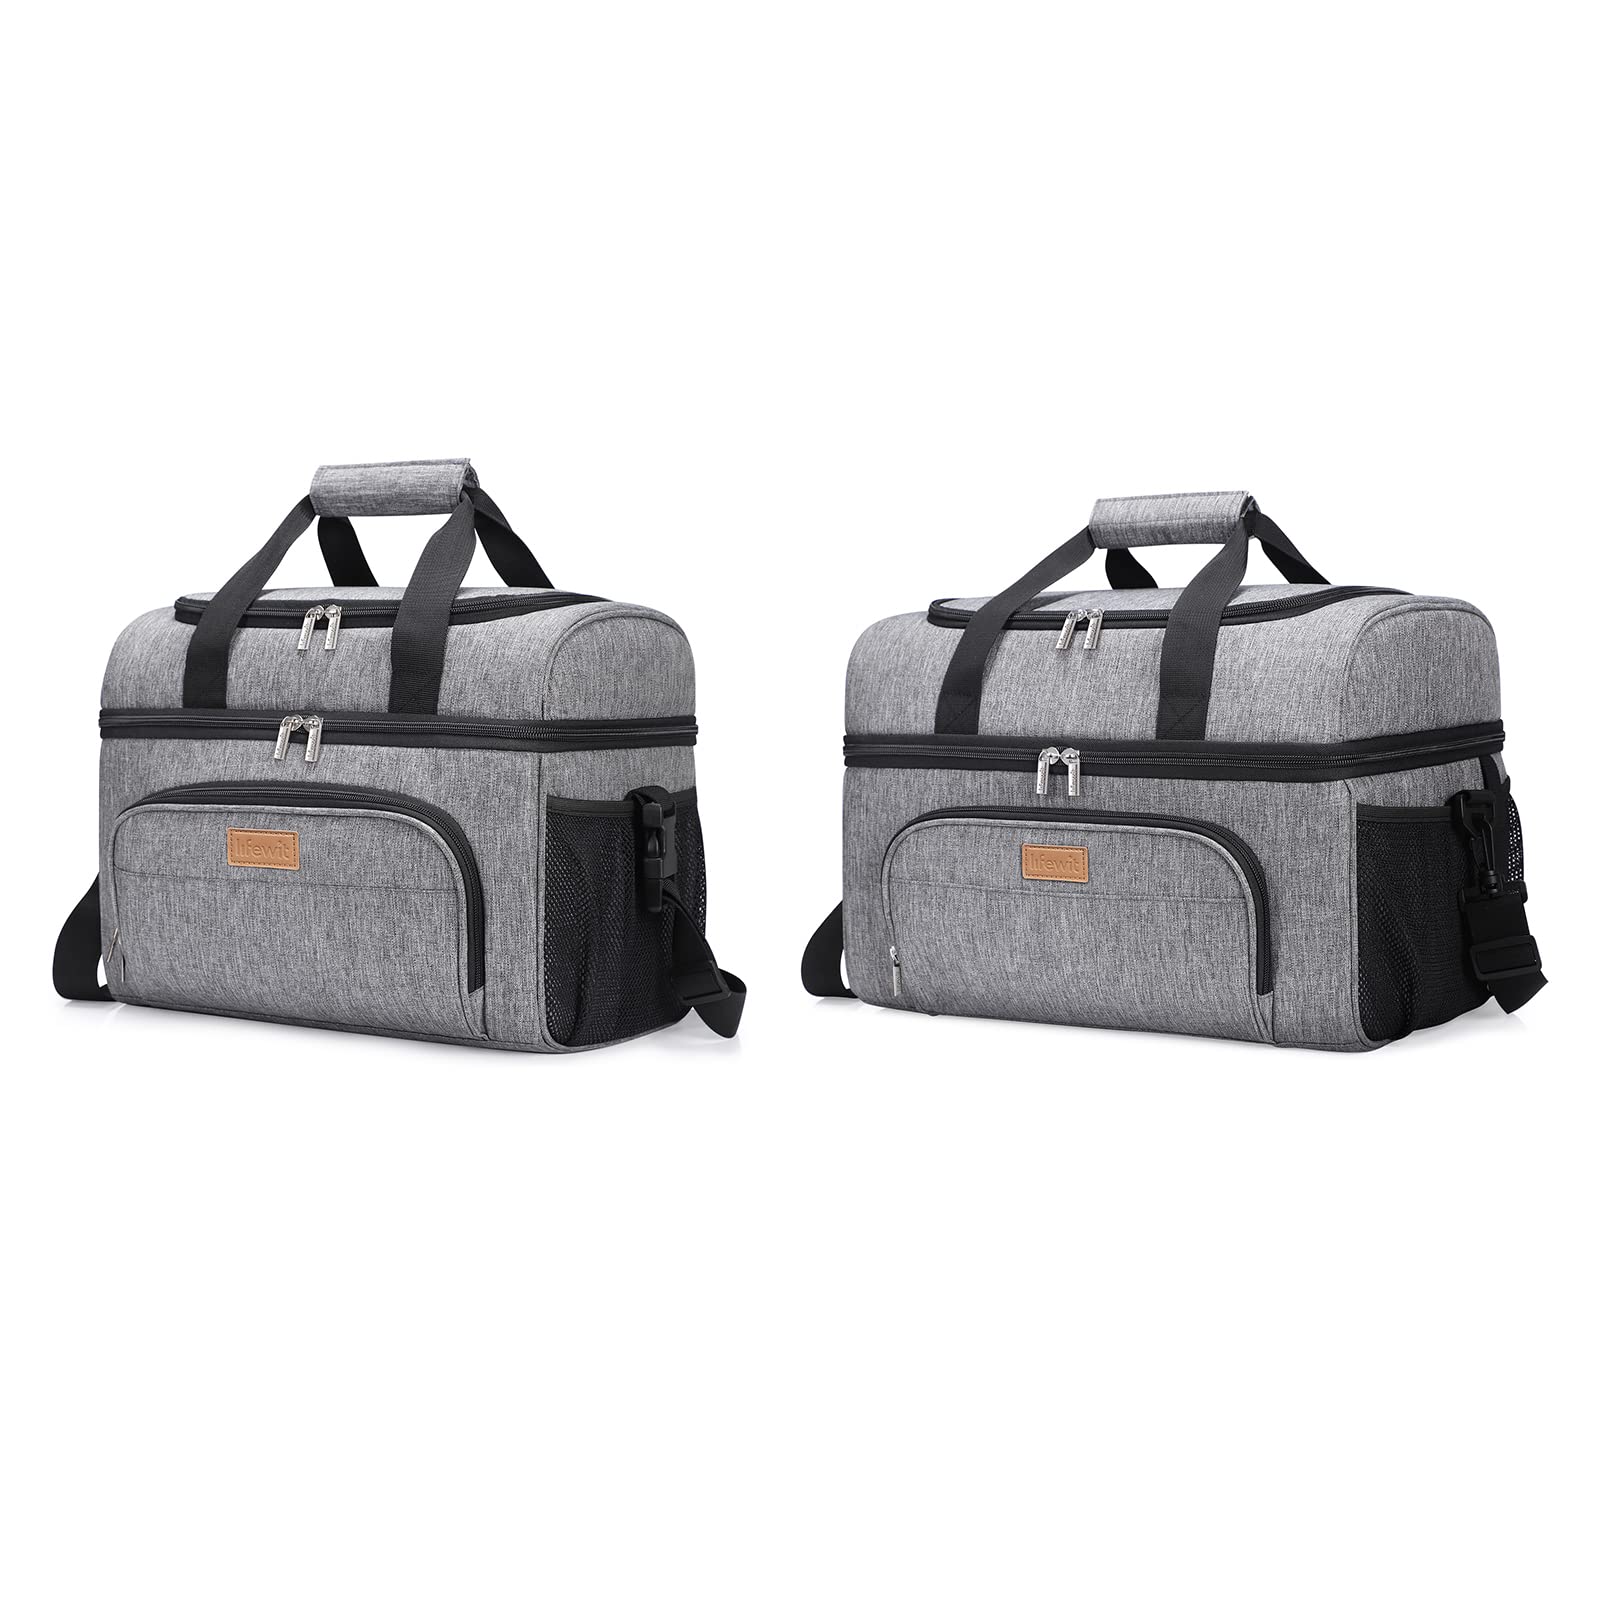 送料無料Lifewit Soft Cooler Bag 32 and 48 Cans Lightweight Portable Cooler Tote Double Layer Grey並行輸入品